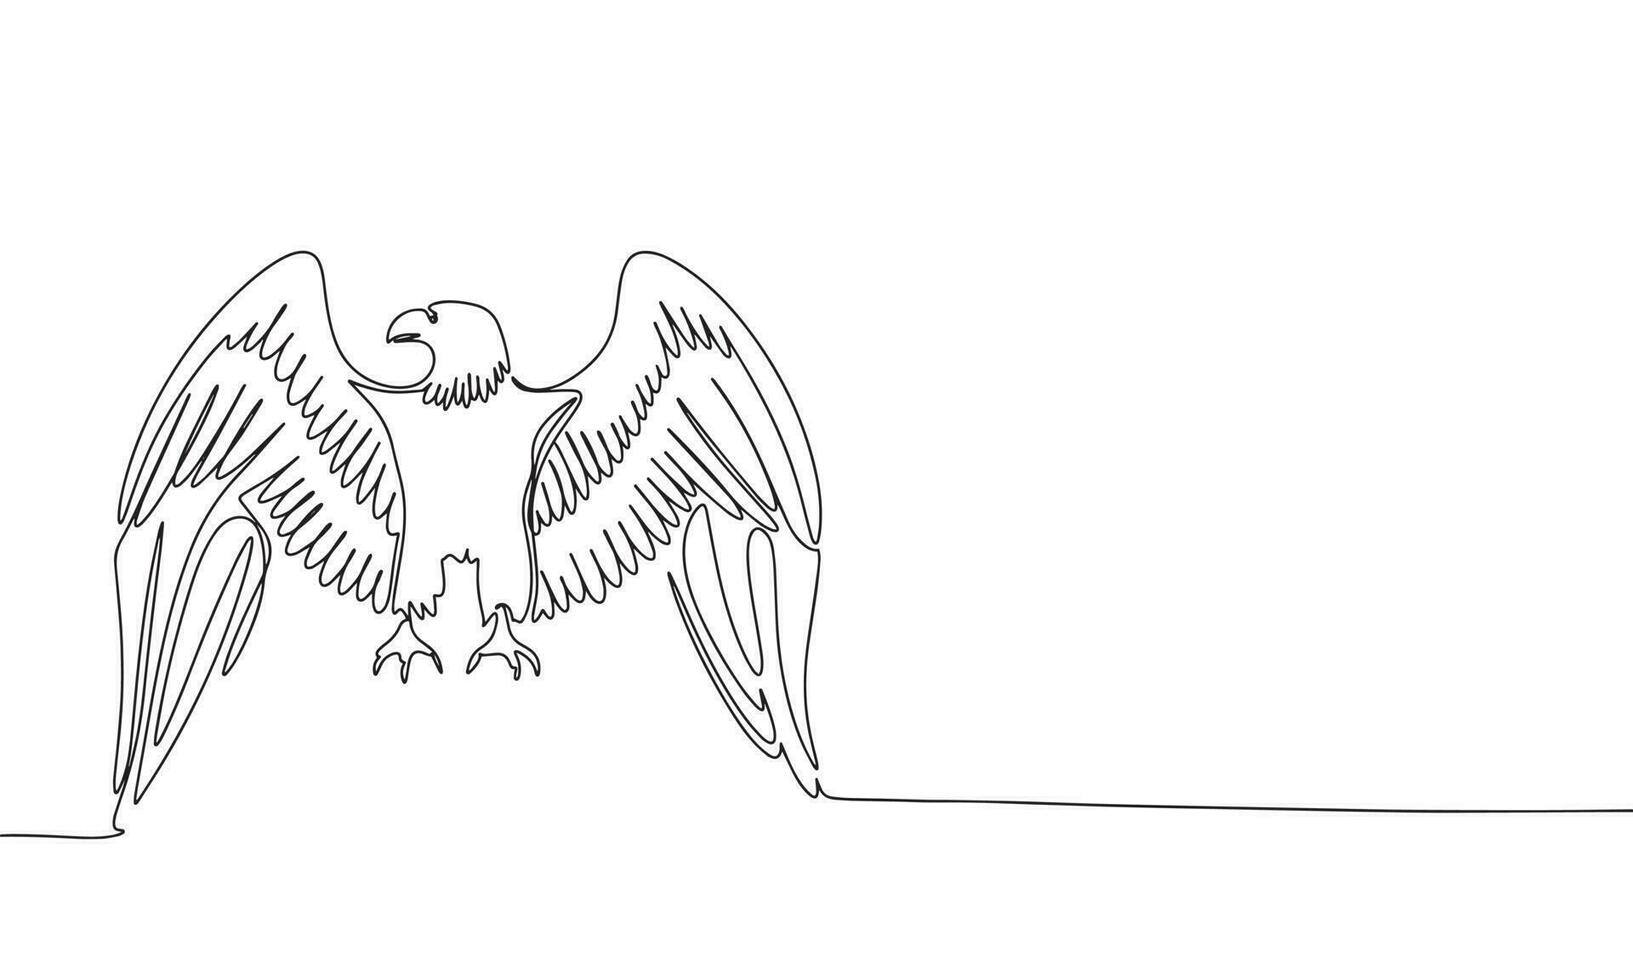 Adler kontinuierlich Linie Zeichnung Element isoliert auf Weiß Hintergrund zum dekorativ Element. Vektor Illustration von Tier bilden im modisch Gliederung Stil.